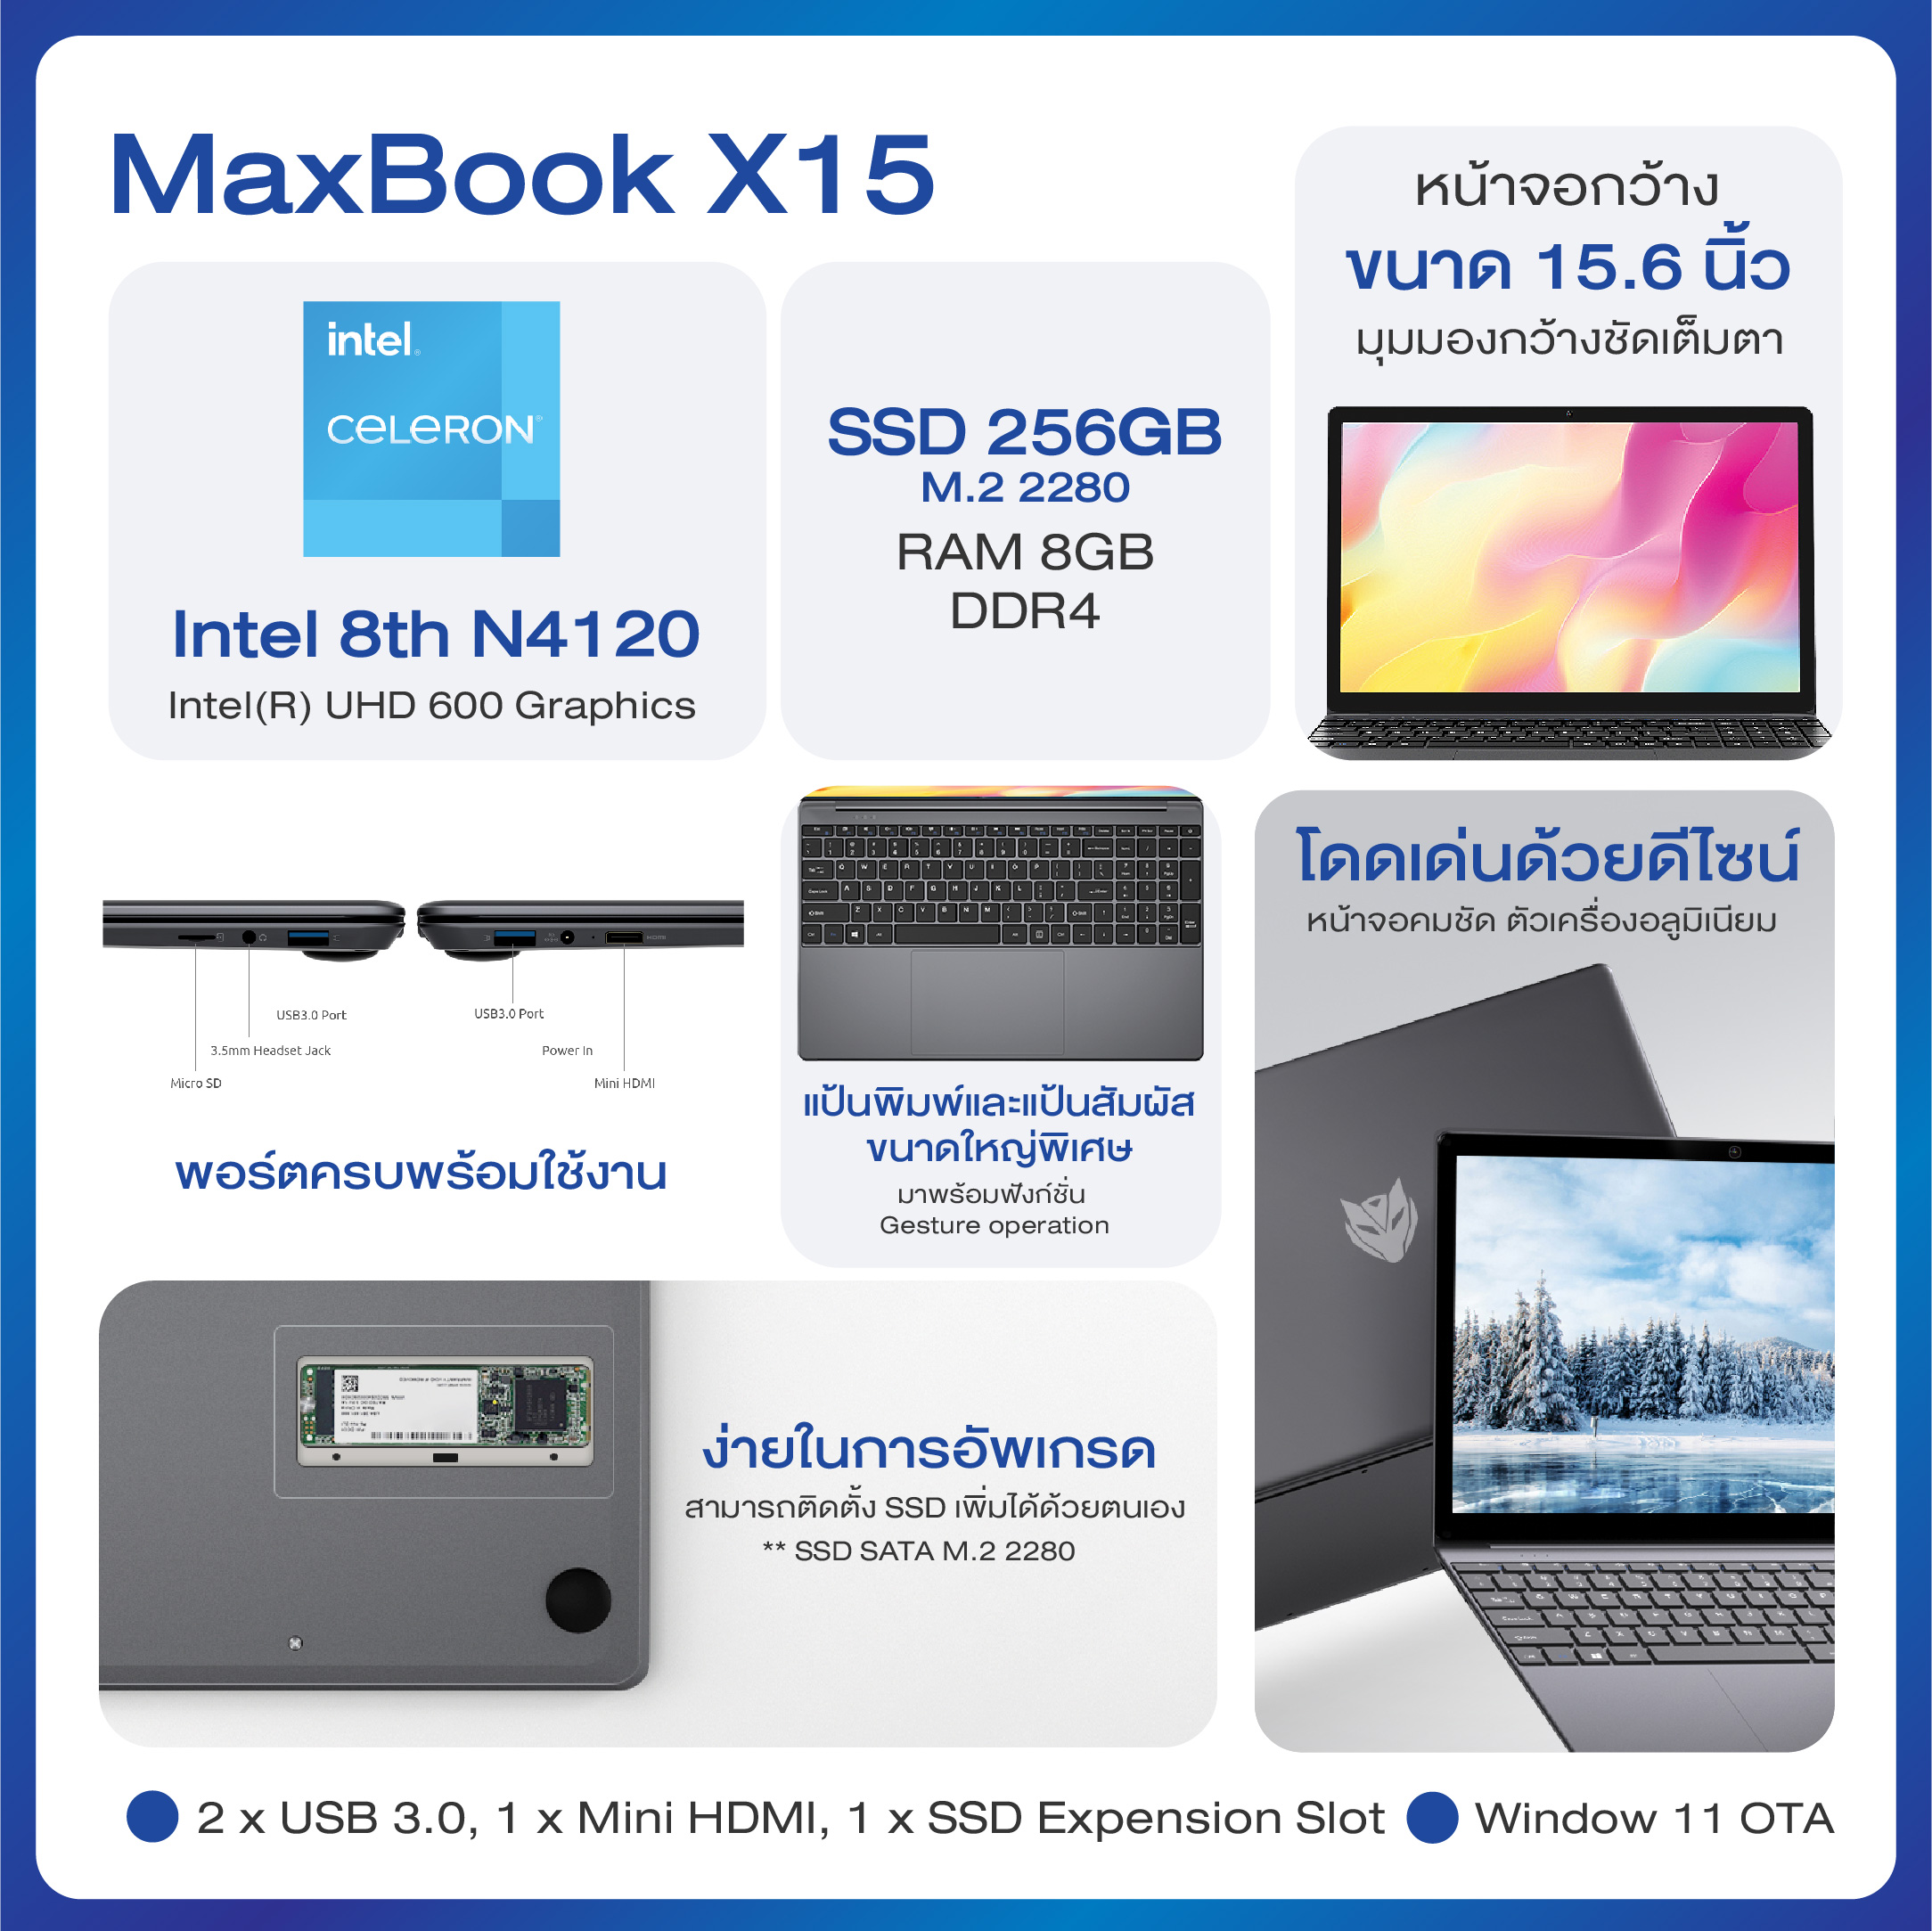 ข้อมูลเพิ่มเติมของ World debut BMAX X15 Notebook Screen15.6'' 1920x1080 IPS Win10(64-bit) CPU Intel® Gemini Lake N4120 8GB LPDDR4 128/256/512GB SSD M.2 2280 SATA USB3.0